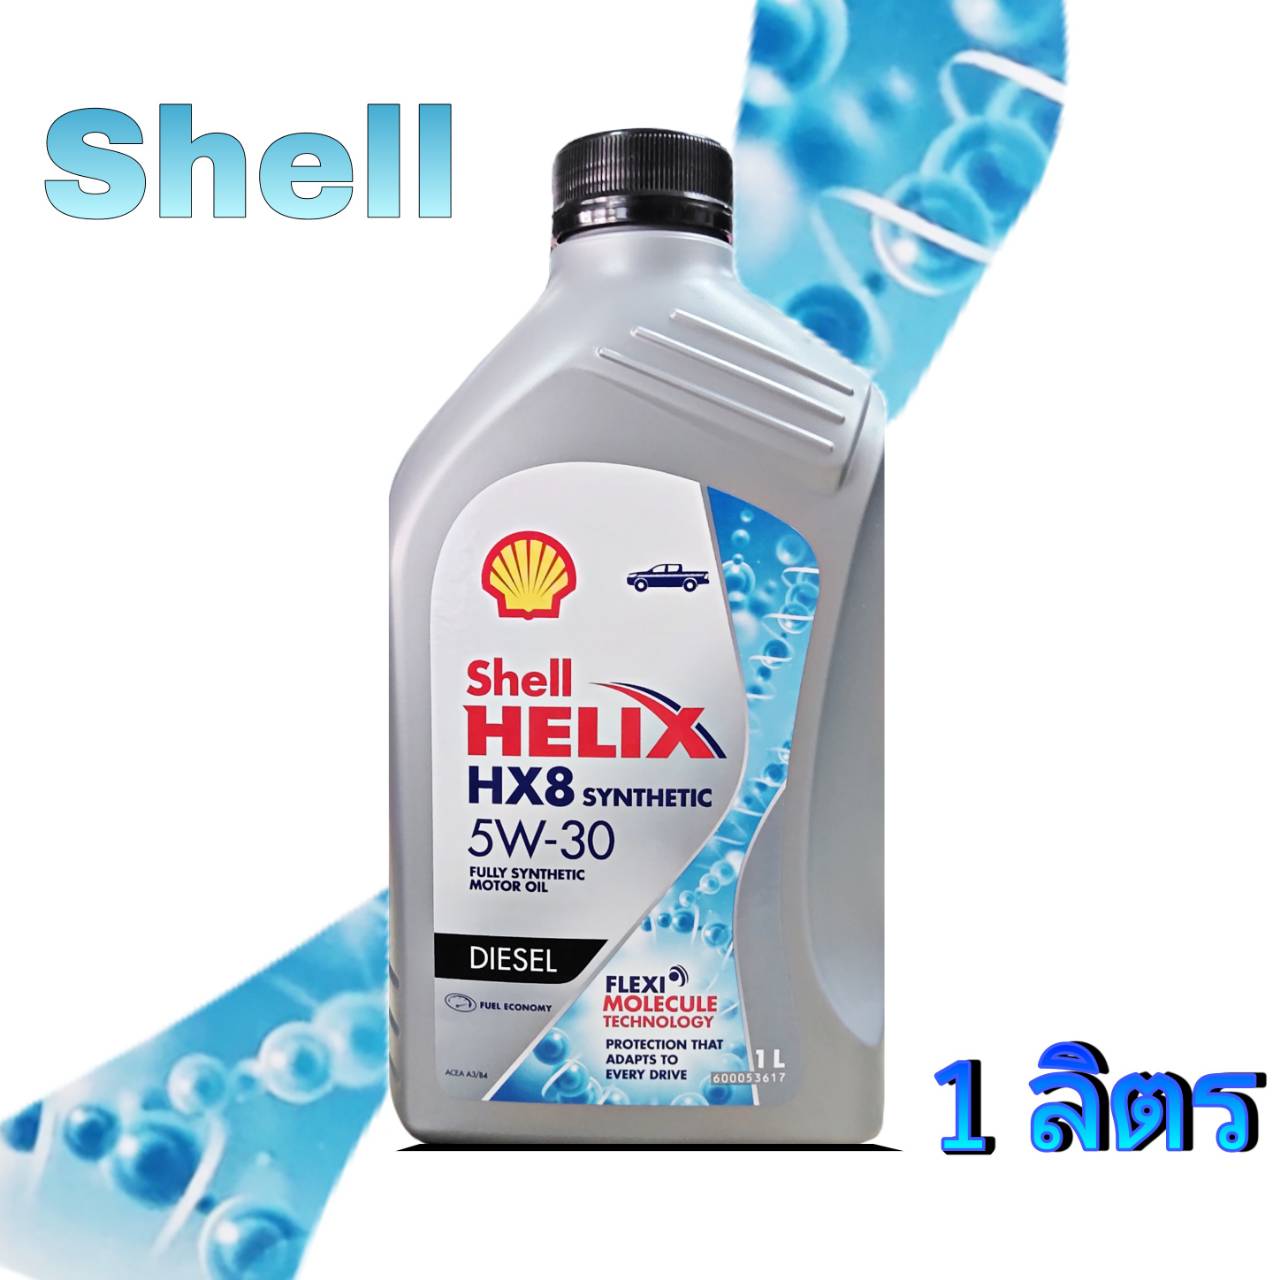 ภาพประกอบของ Shell HELIX HX8 SYNTHETIC 5W-30 ( 1ลิตร ) น้ำมันเครื่องยนต์ดีเซล สังเคราะห์แท้ 100% !!ล๊อตใหม่ล่าสุด